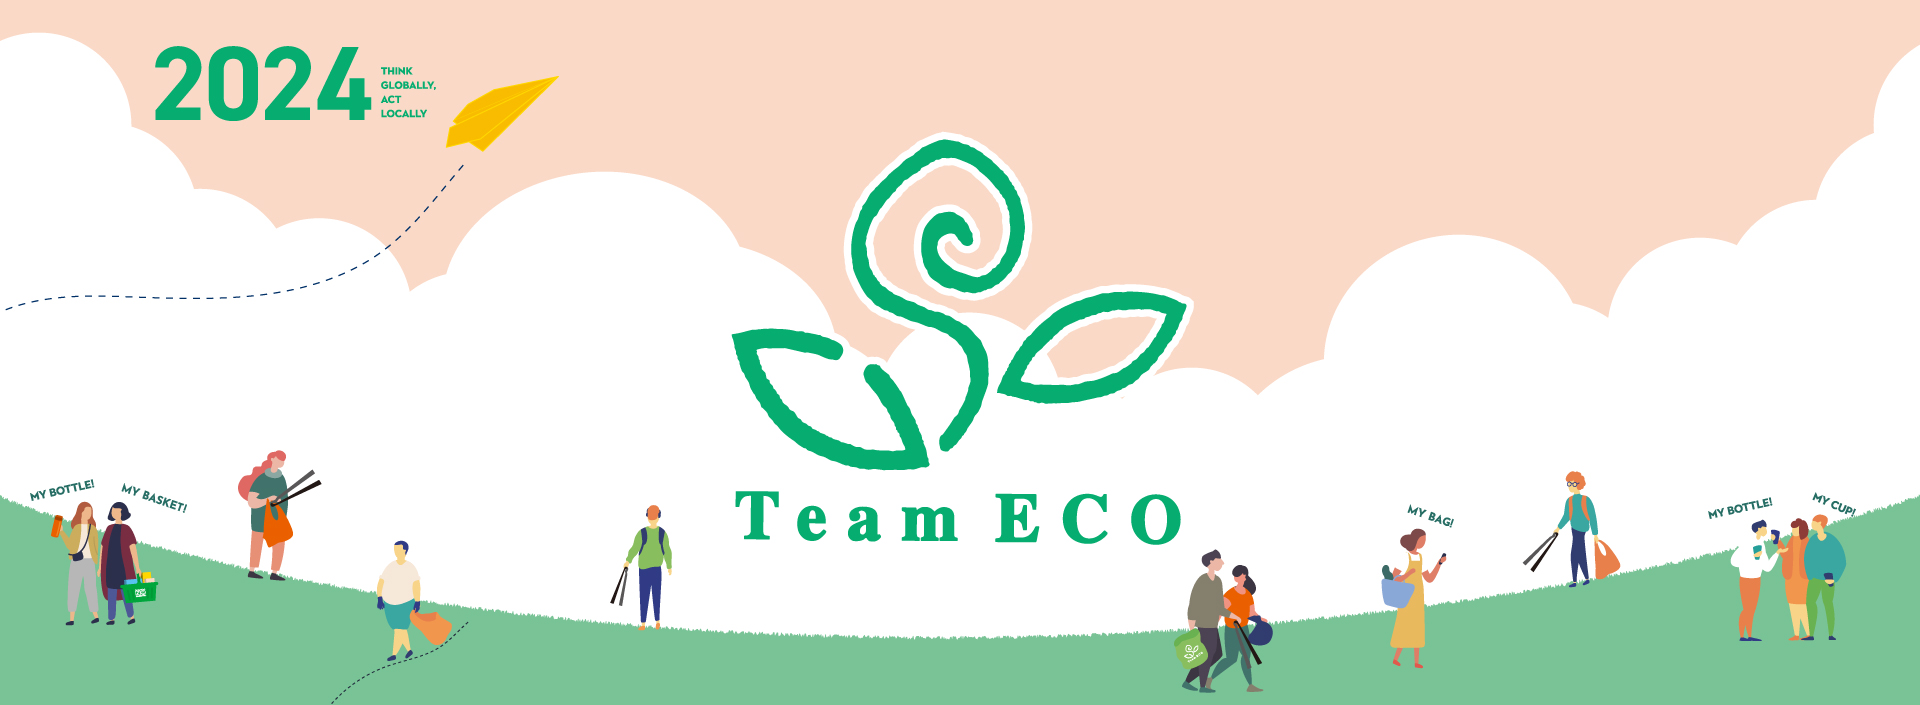 2020年1月🌱Team ECOメッセージは関川村